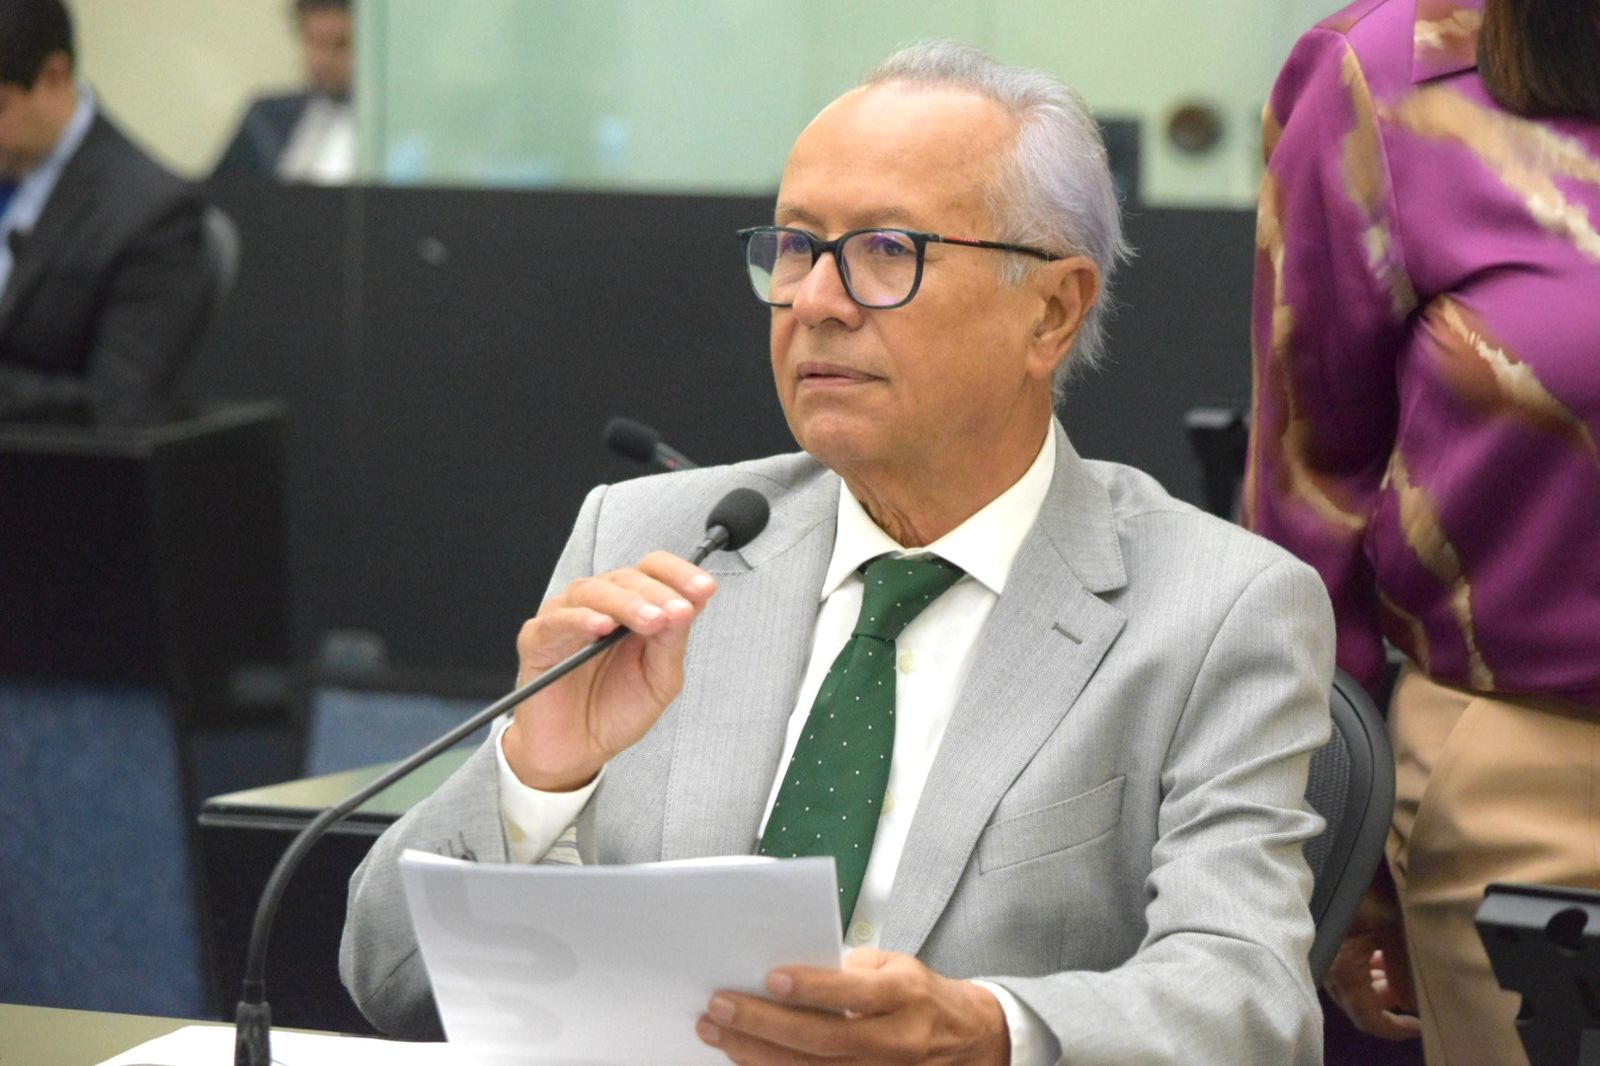 Doutor Wanderley lamenta passagem "decepcionante" de senadores da CPI da Braskem em Maceió